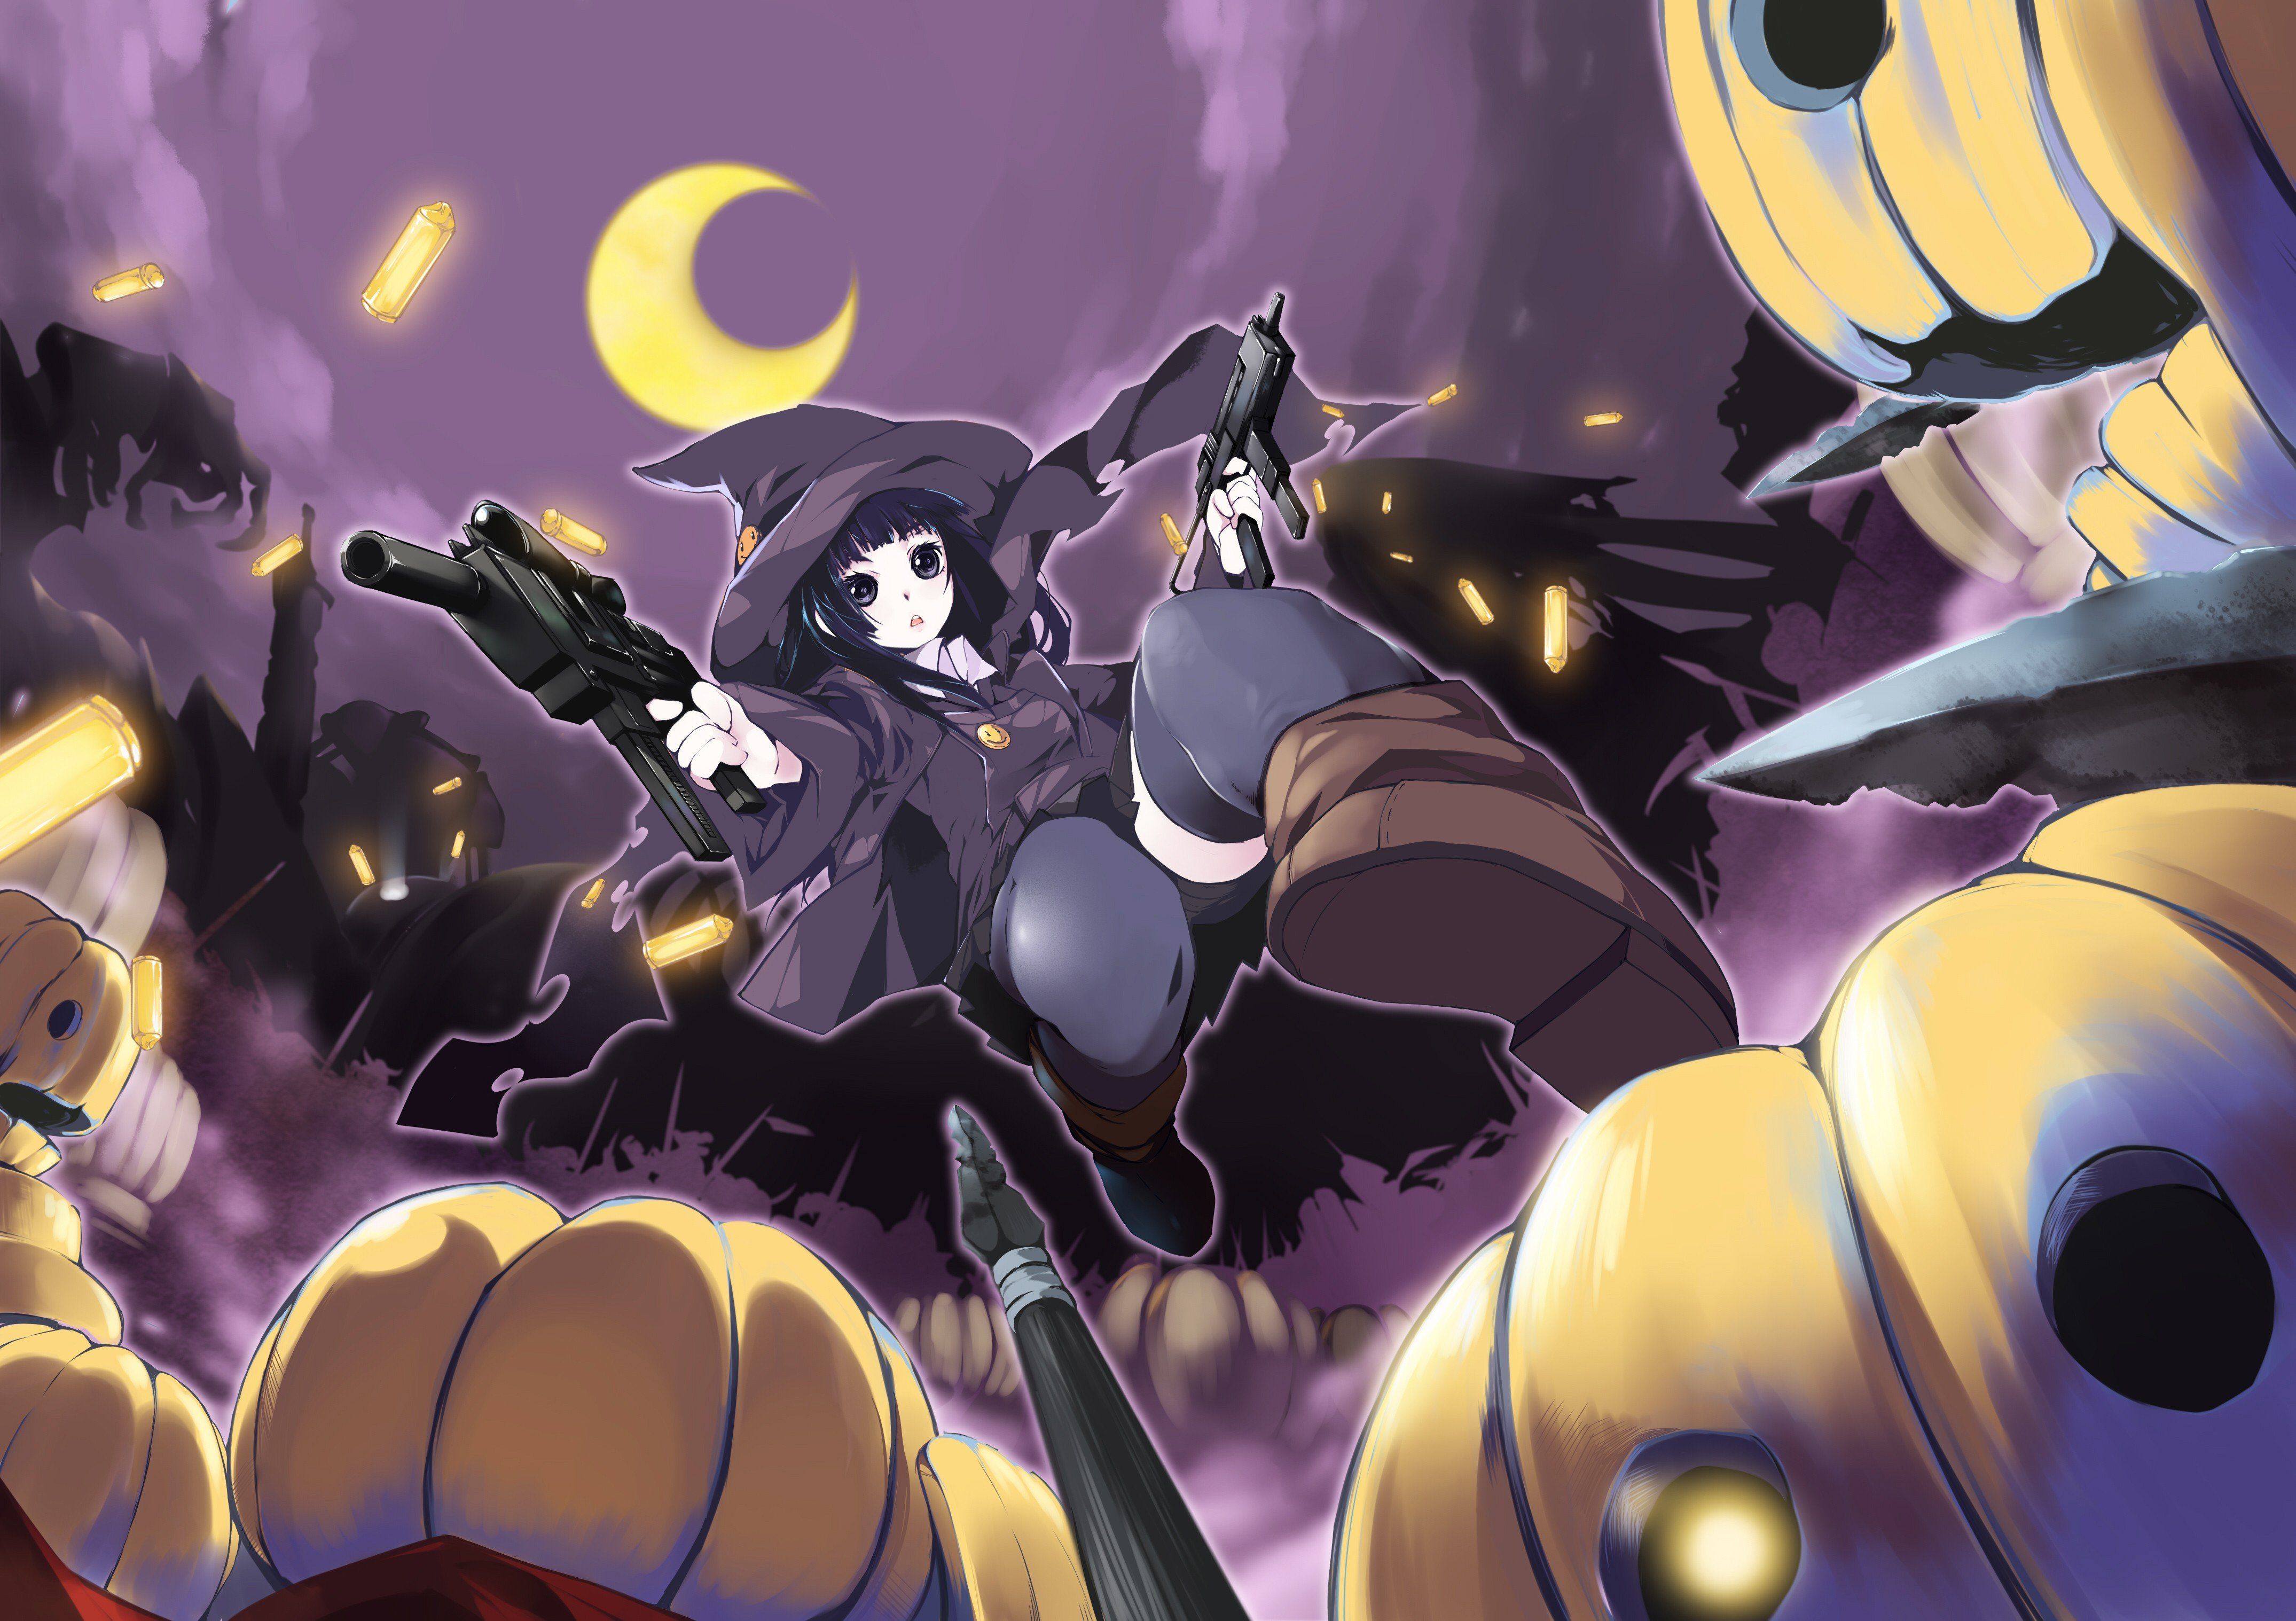 Witch Halloween Moon weapons thigh highs anime girls pumpkins wallpaperx3035